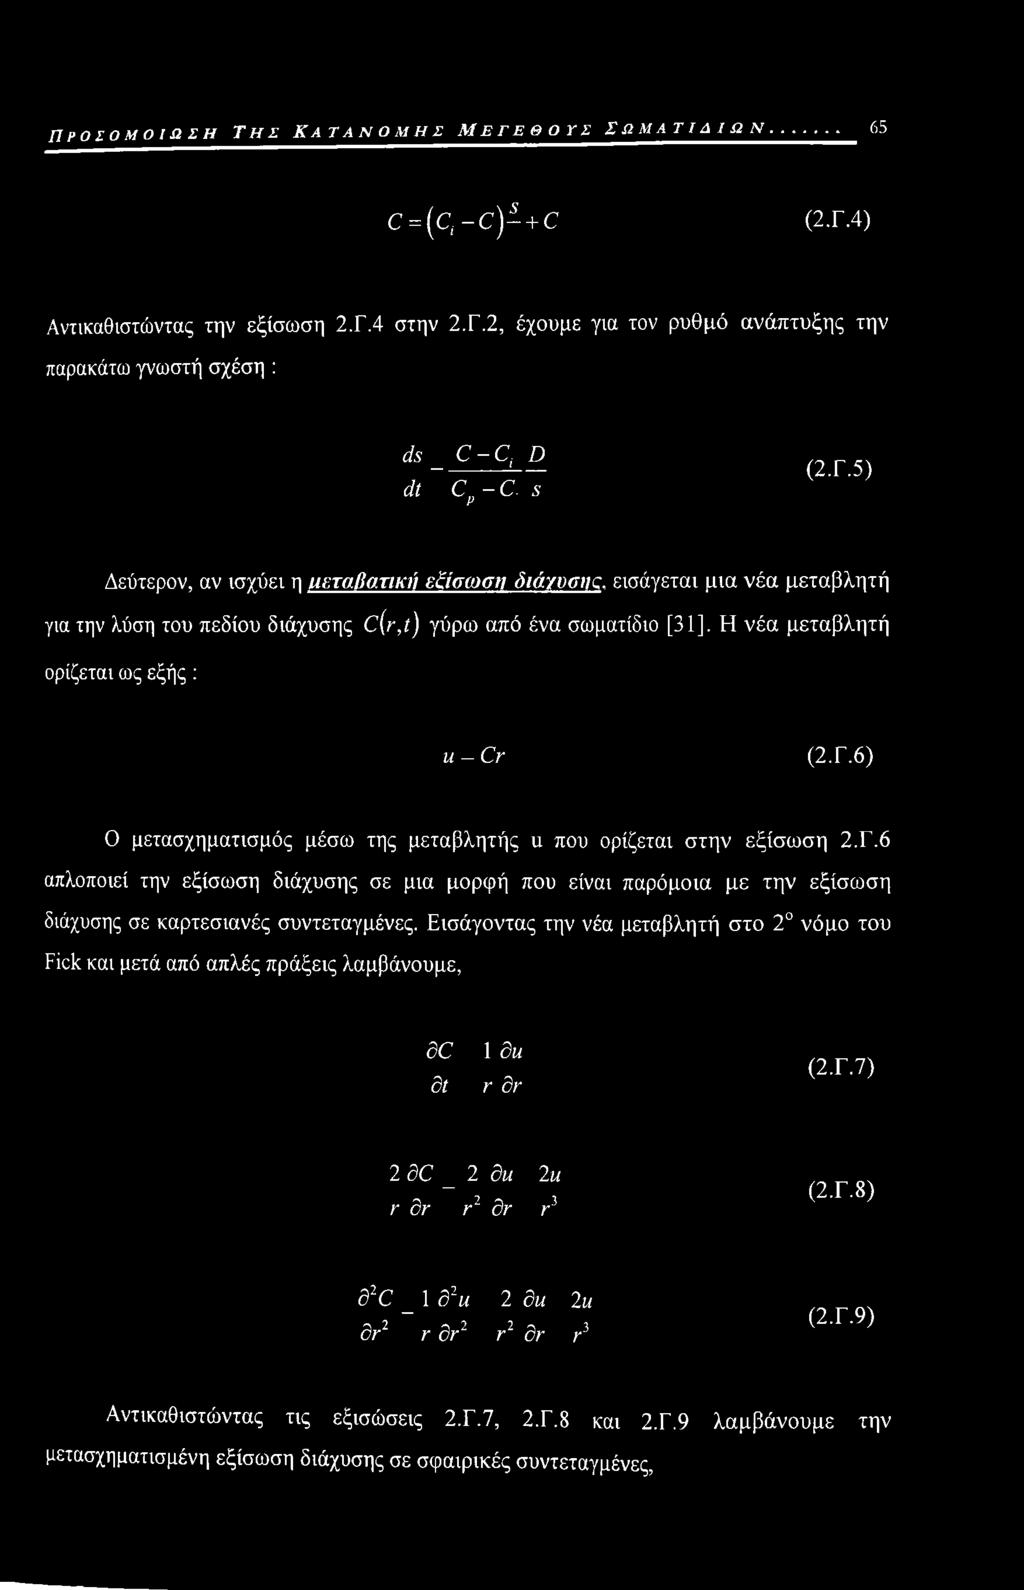 Γ.6 απλοποιεί την εξίσωση διάχυσης σε μια μορφή που είναι παρόμοια με την εξίσωση διάχυσης σε καρτεσιανές συντεταγμένες.